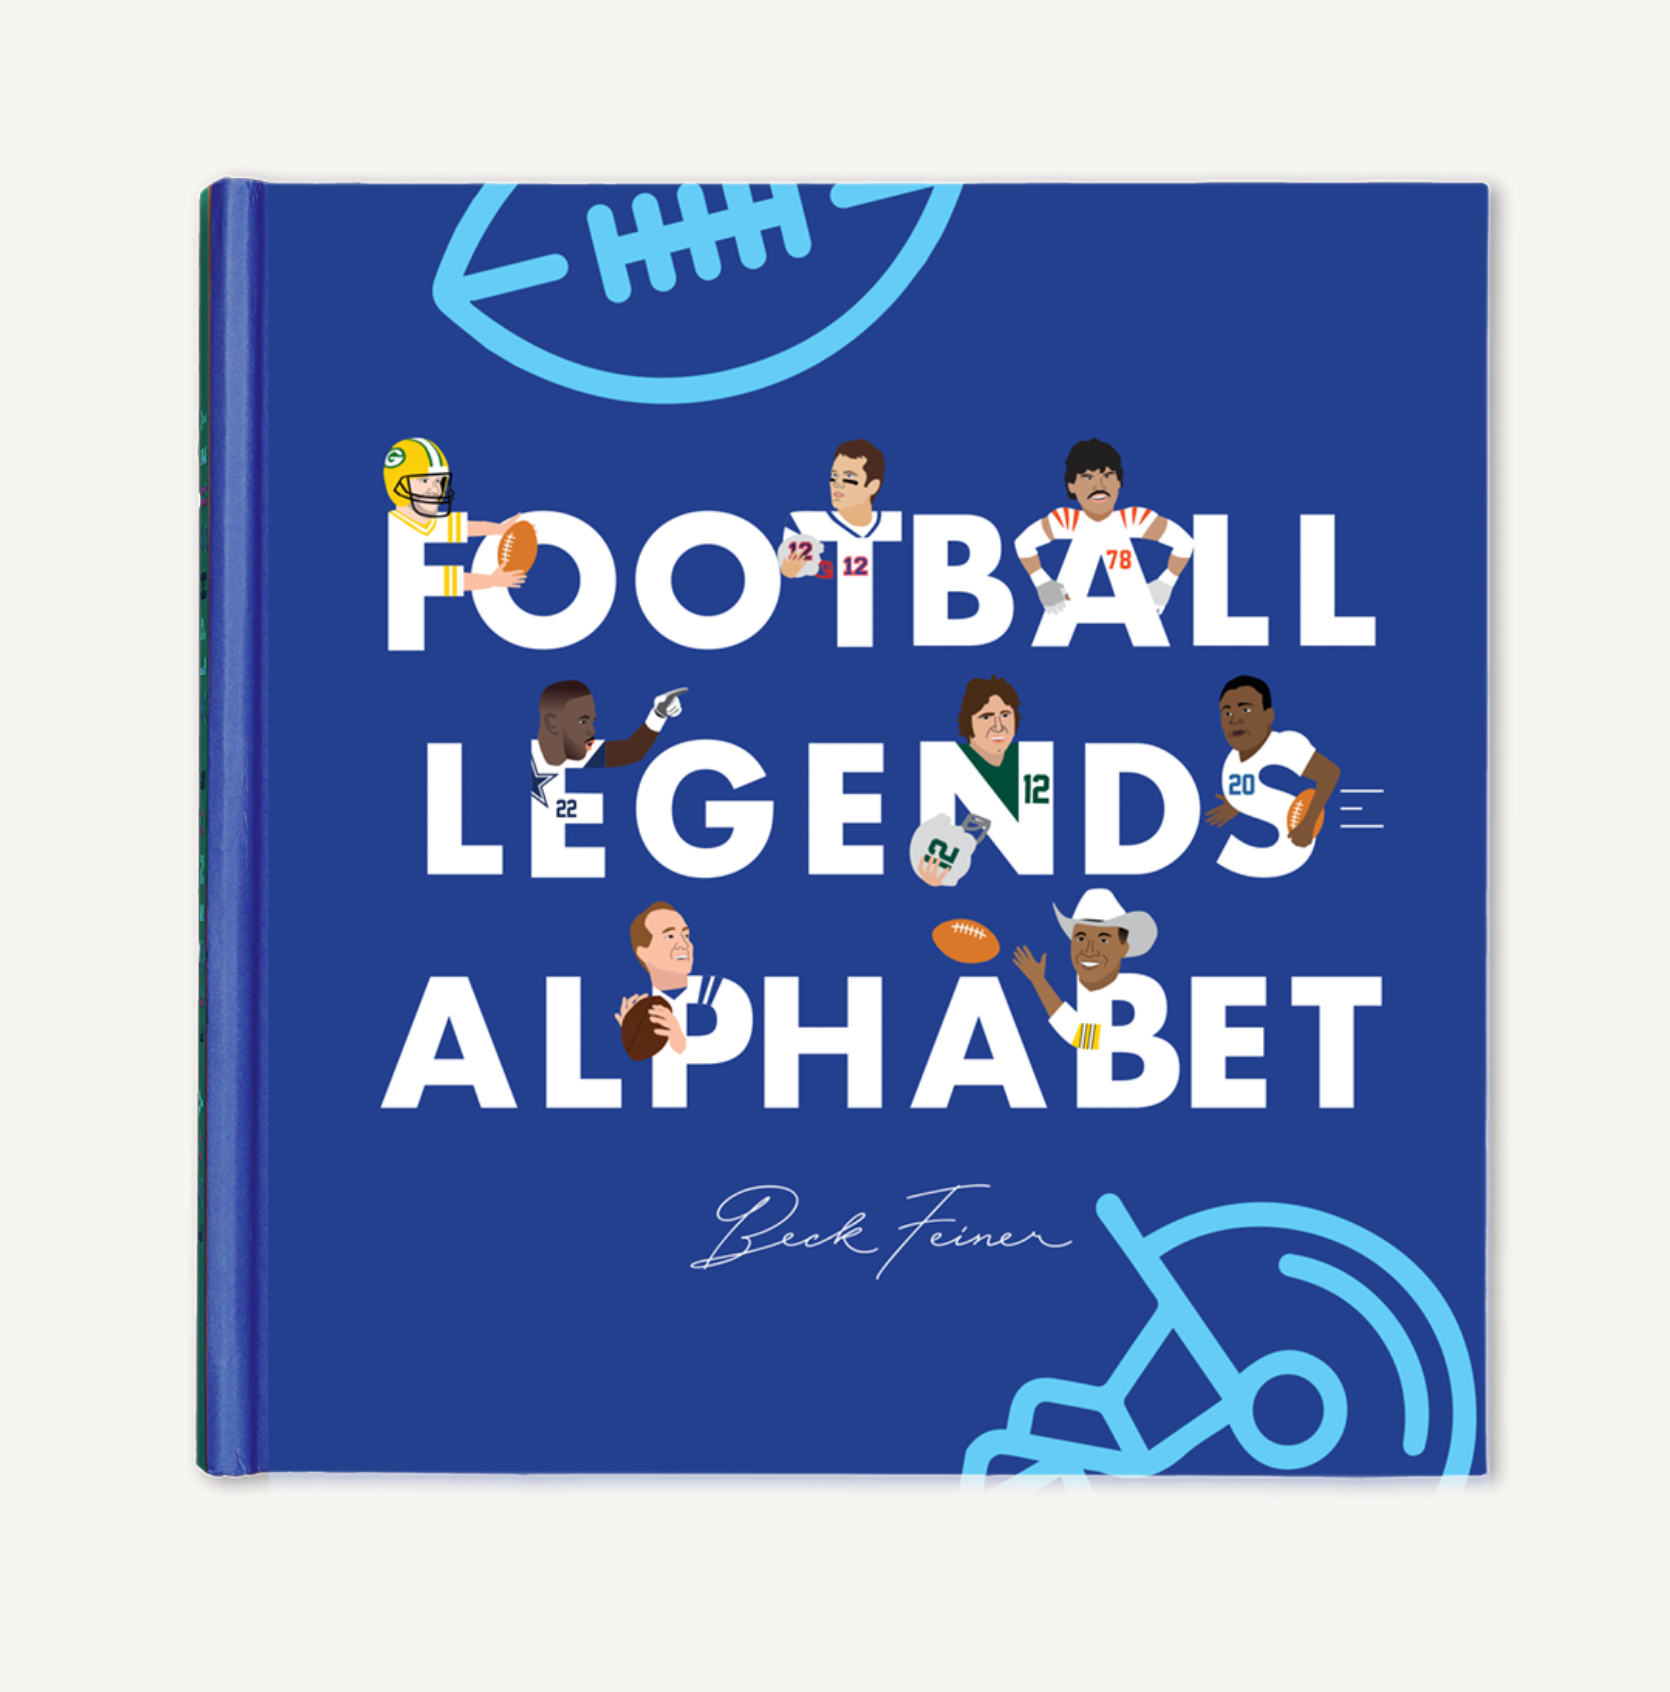 Football Alphabet Legends Book